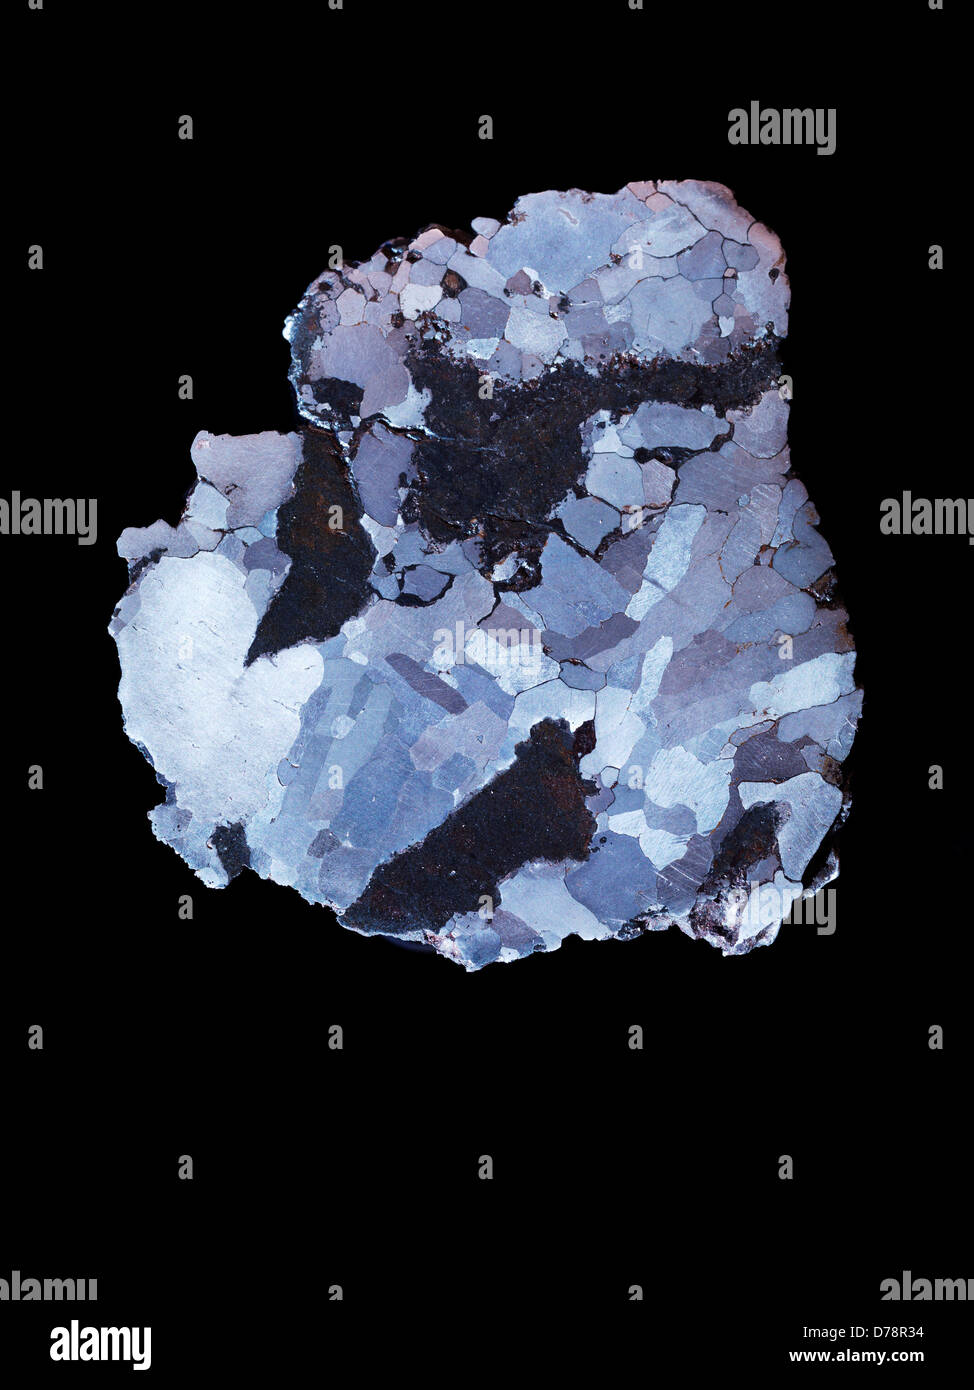 Campo del Cielo Eisen Meteorit Slice geätzt auf Widmanstätten-Struktur zeigen große Austenit Kristalle Meteorit fiel poliert Stockfoto